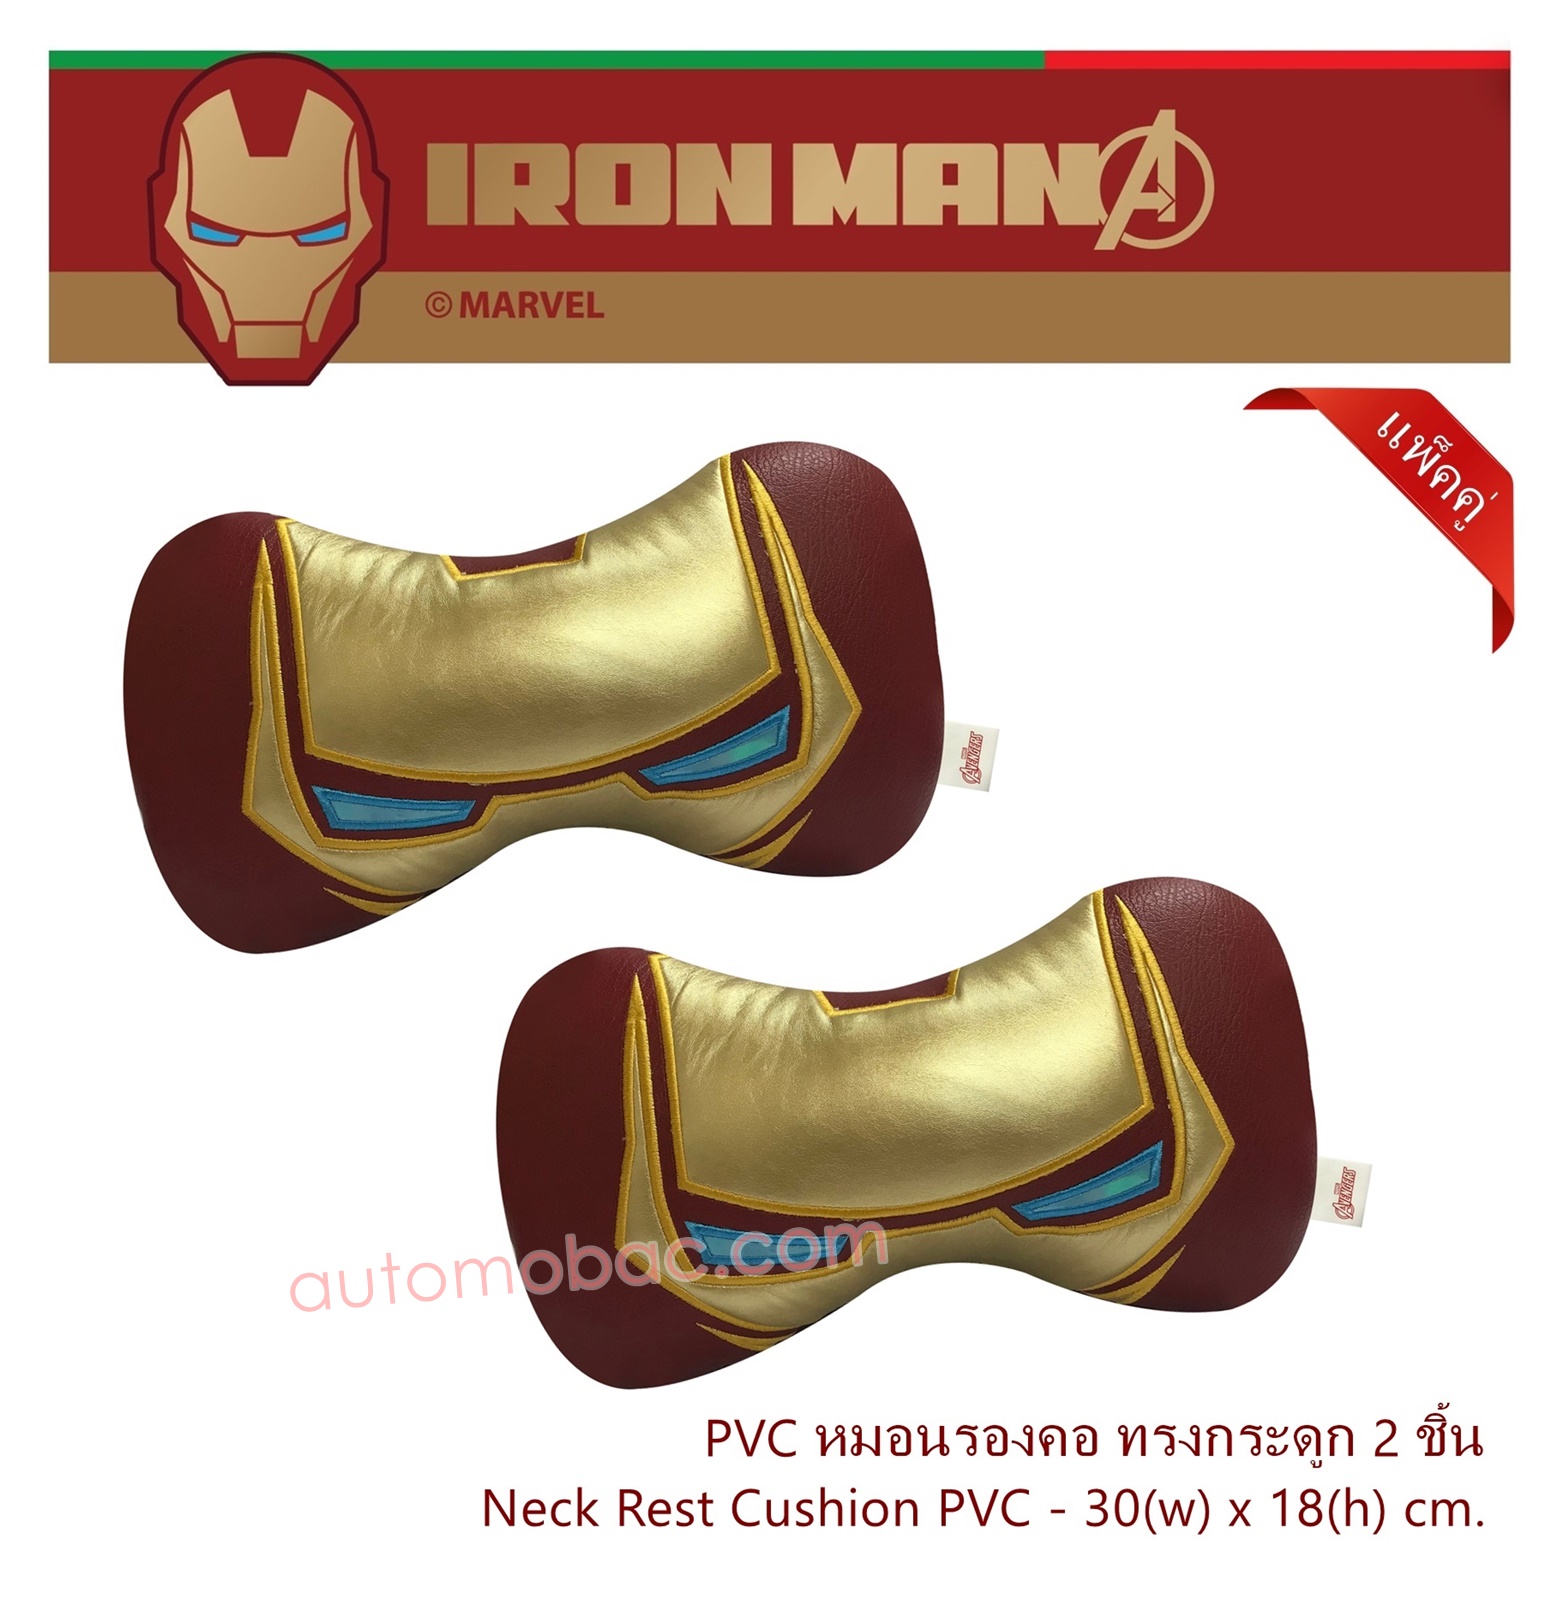 IRON-MAN หมอนรองคอ ทรงกระดูก 2 ชิ้น หนัง PVC ใช้รองคอเพื่อลดการปวดเมื่อยขณะขับรถ ลิขสิทธิ์แท้ สวยงาม